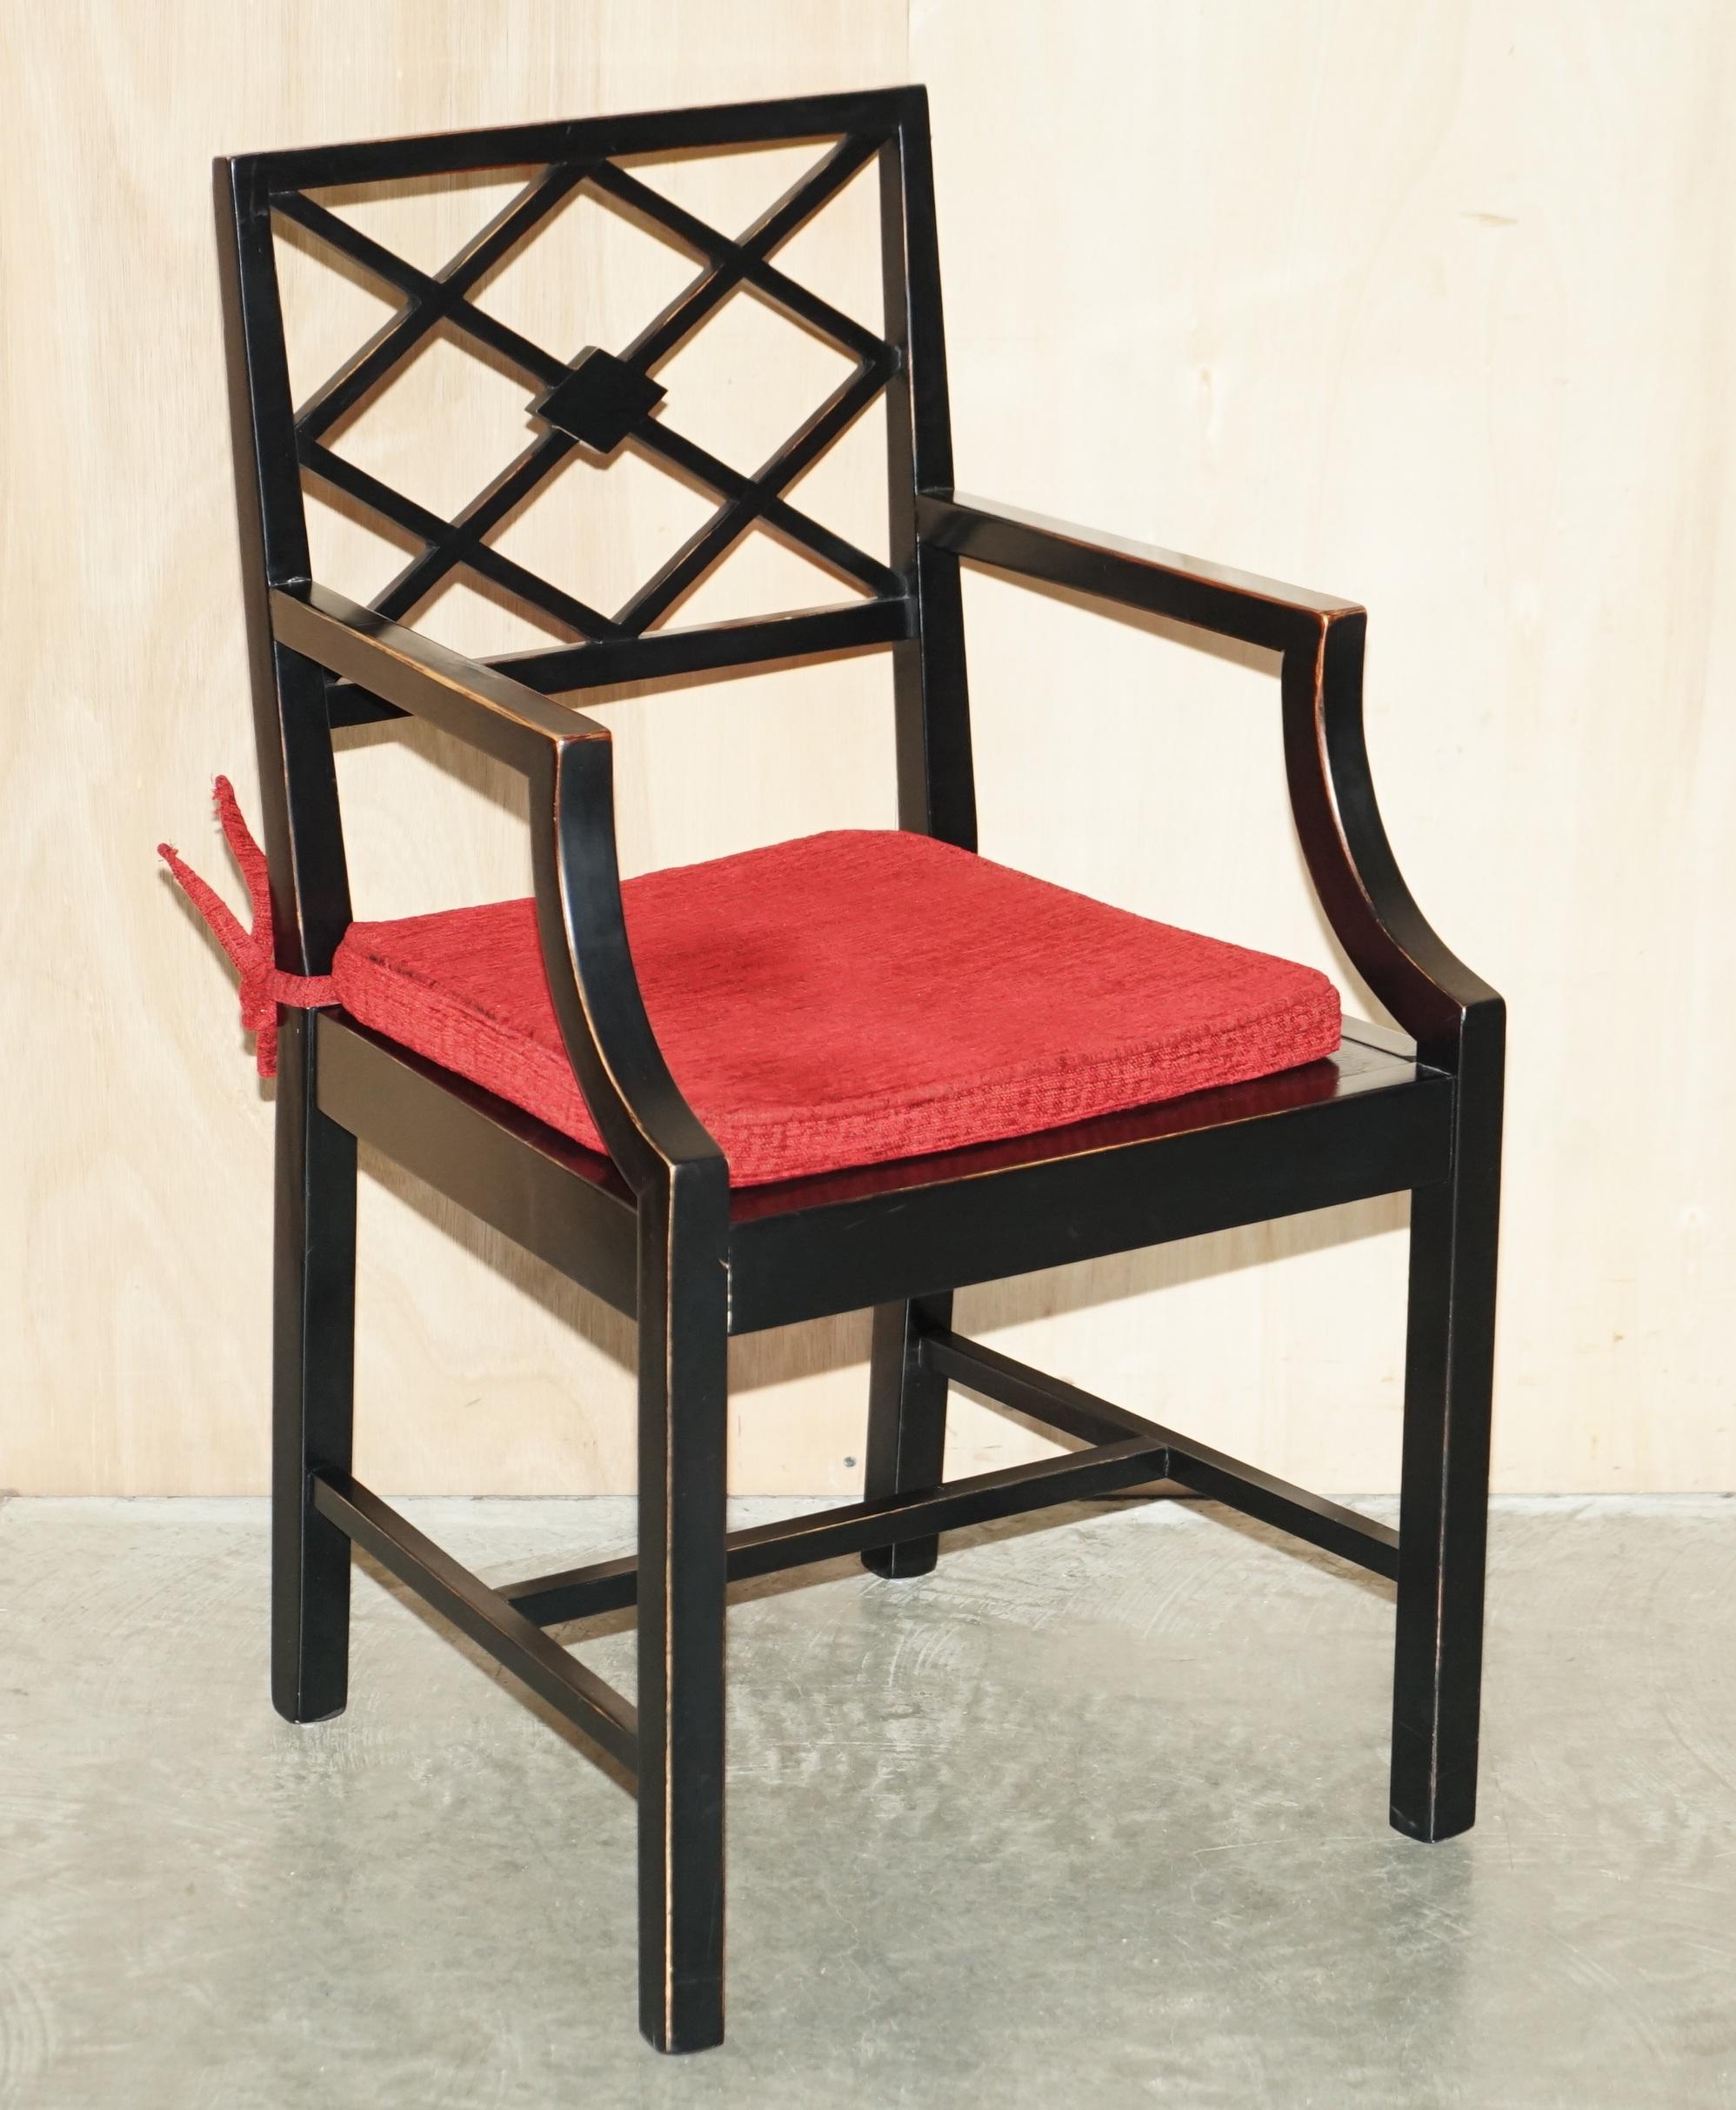 Nous avons le plaisir de proposer à la vente cette belle paire de chaises d'appoint en ébène de style Thomas Chippendale.

Une paire très belle et bien faite, basée sur les originaux de Chippendale qui se vendraient environ £100,000 pour une